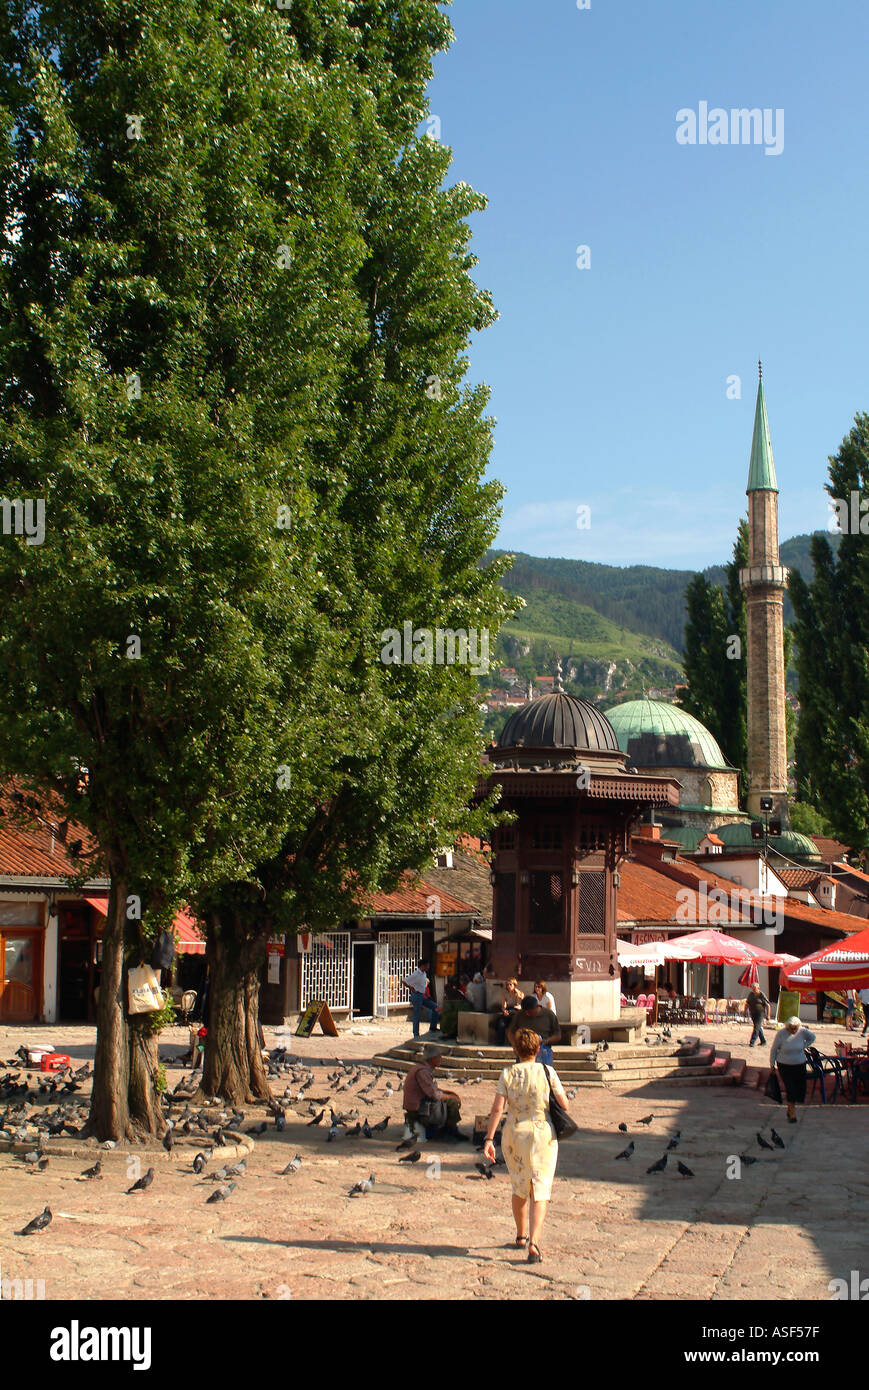 Bascarsija der alten türkischen Markt Sarajevo Bosnien Herzegowina Osteuropa Stockfoto